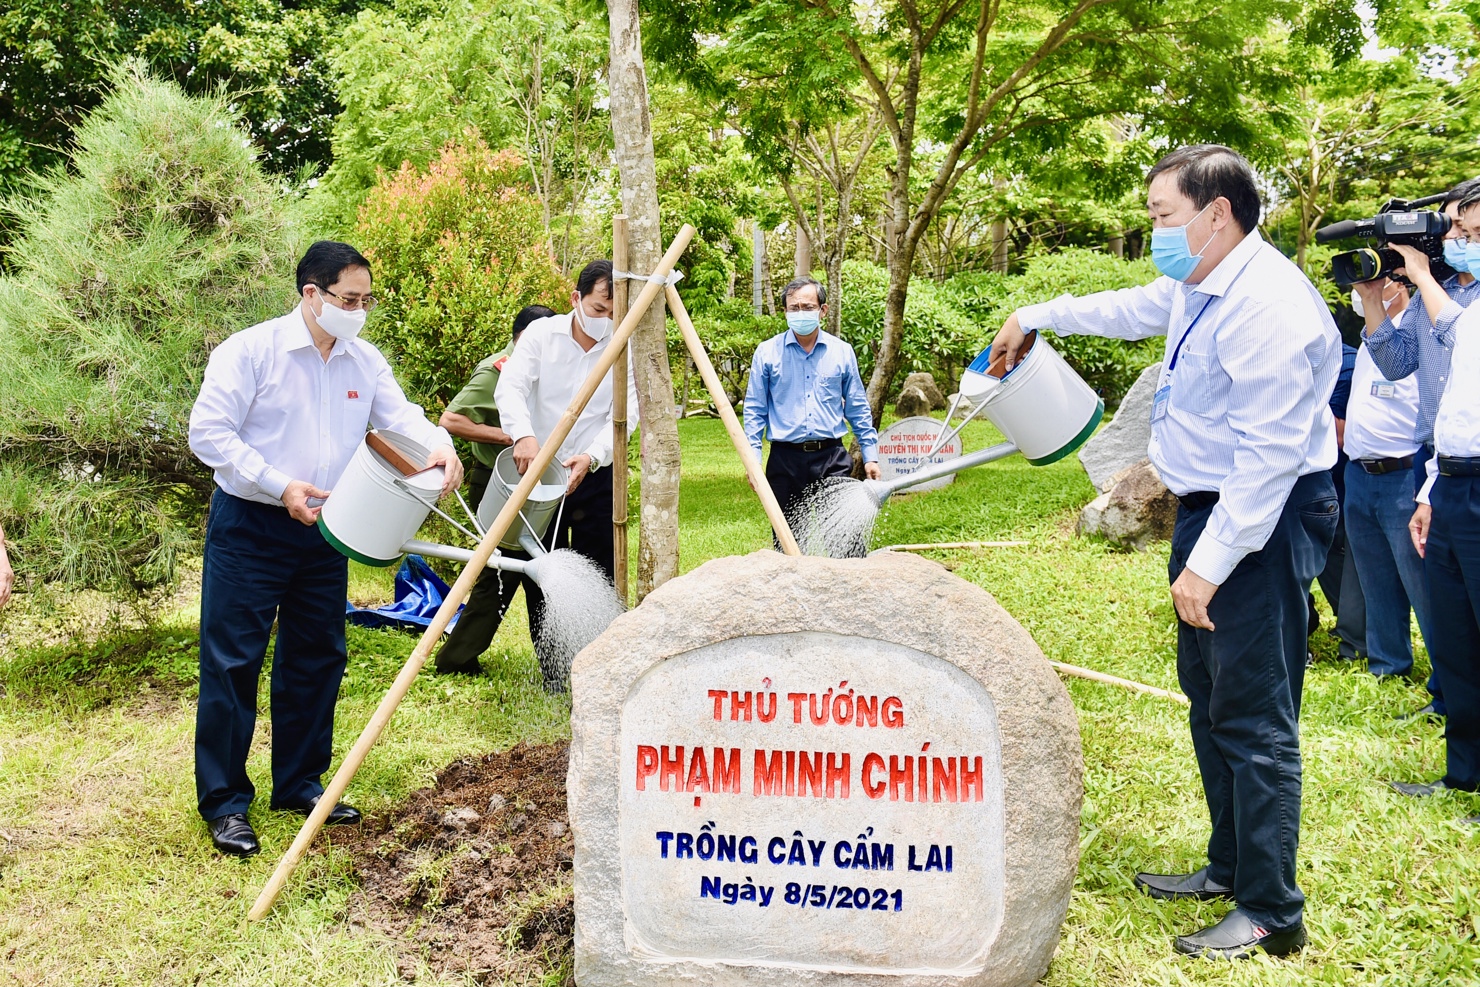 Thủ tướng Chính phủ Phạm Minh Chính tiếp xúc cử tri tại TP. Cần Thơ - Ảnh 1